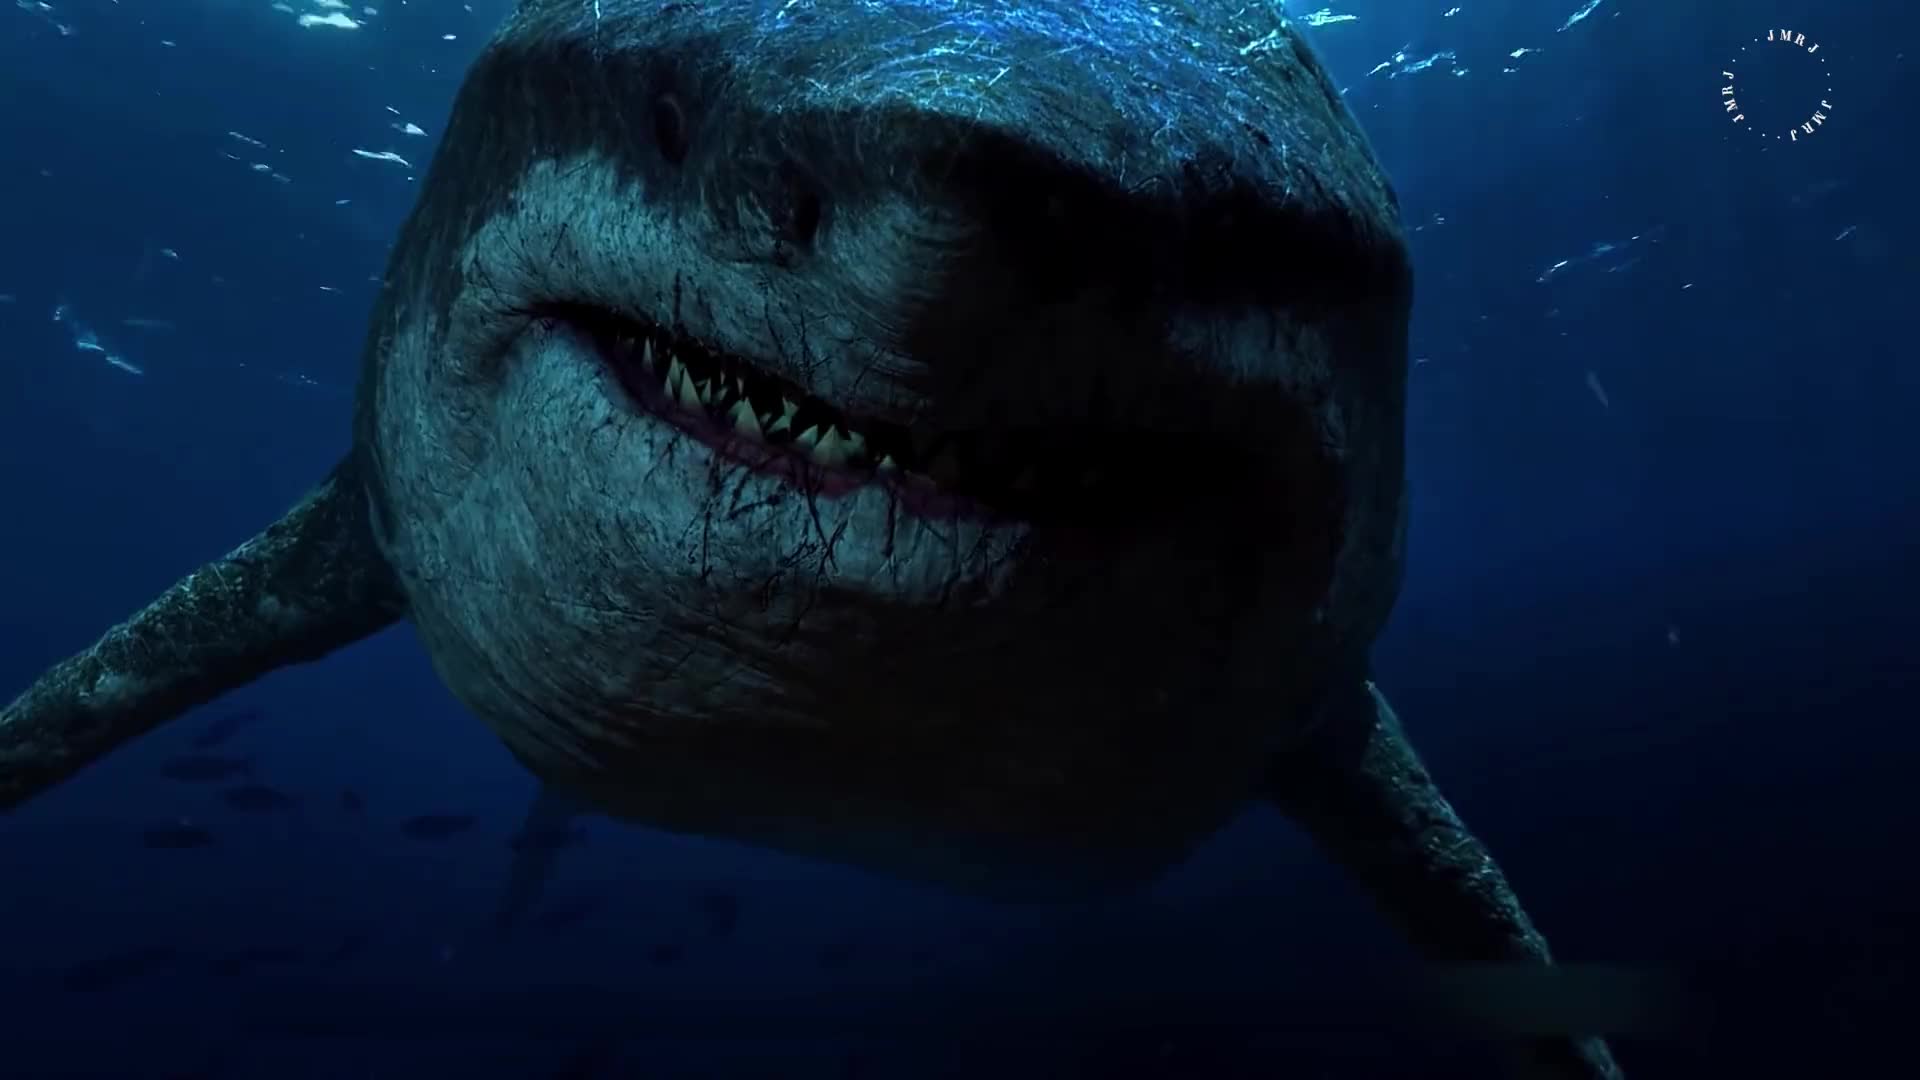 巨齿鲨灭绝了吗 丧尸图片